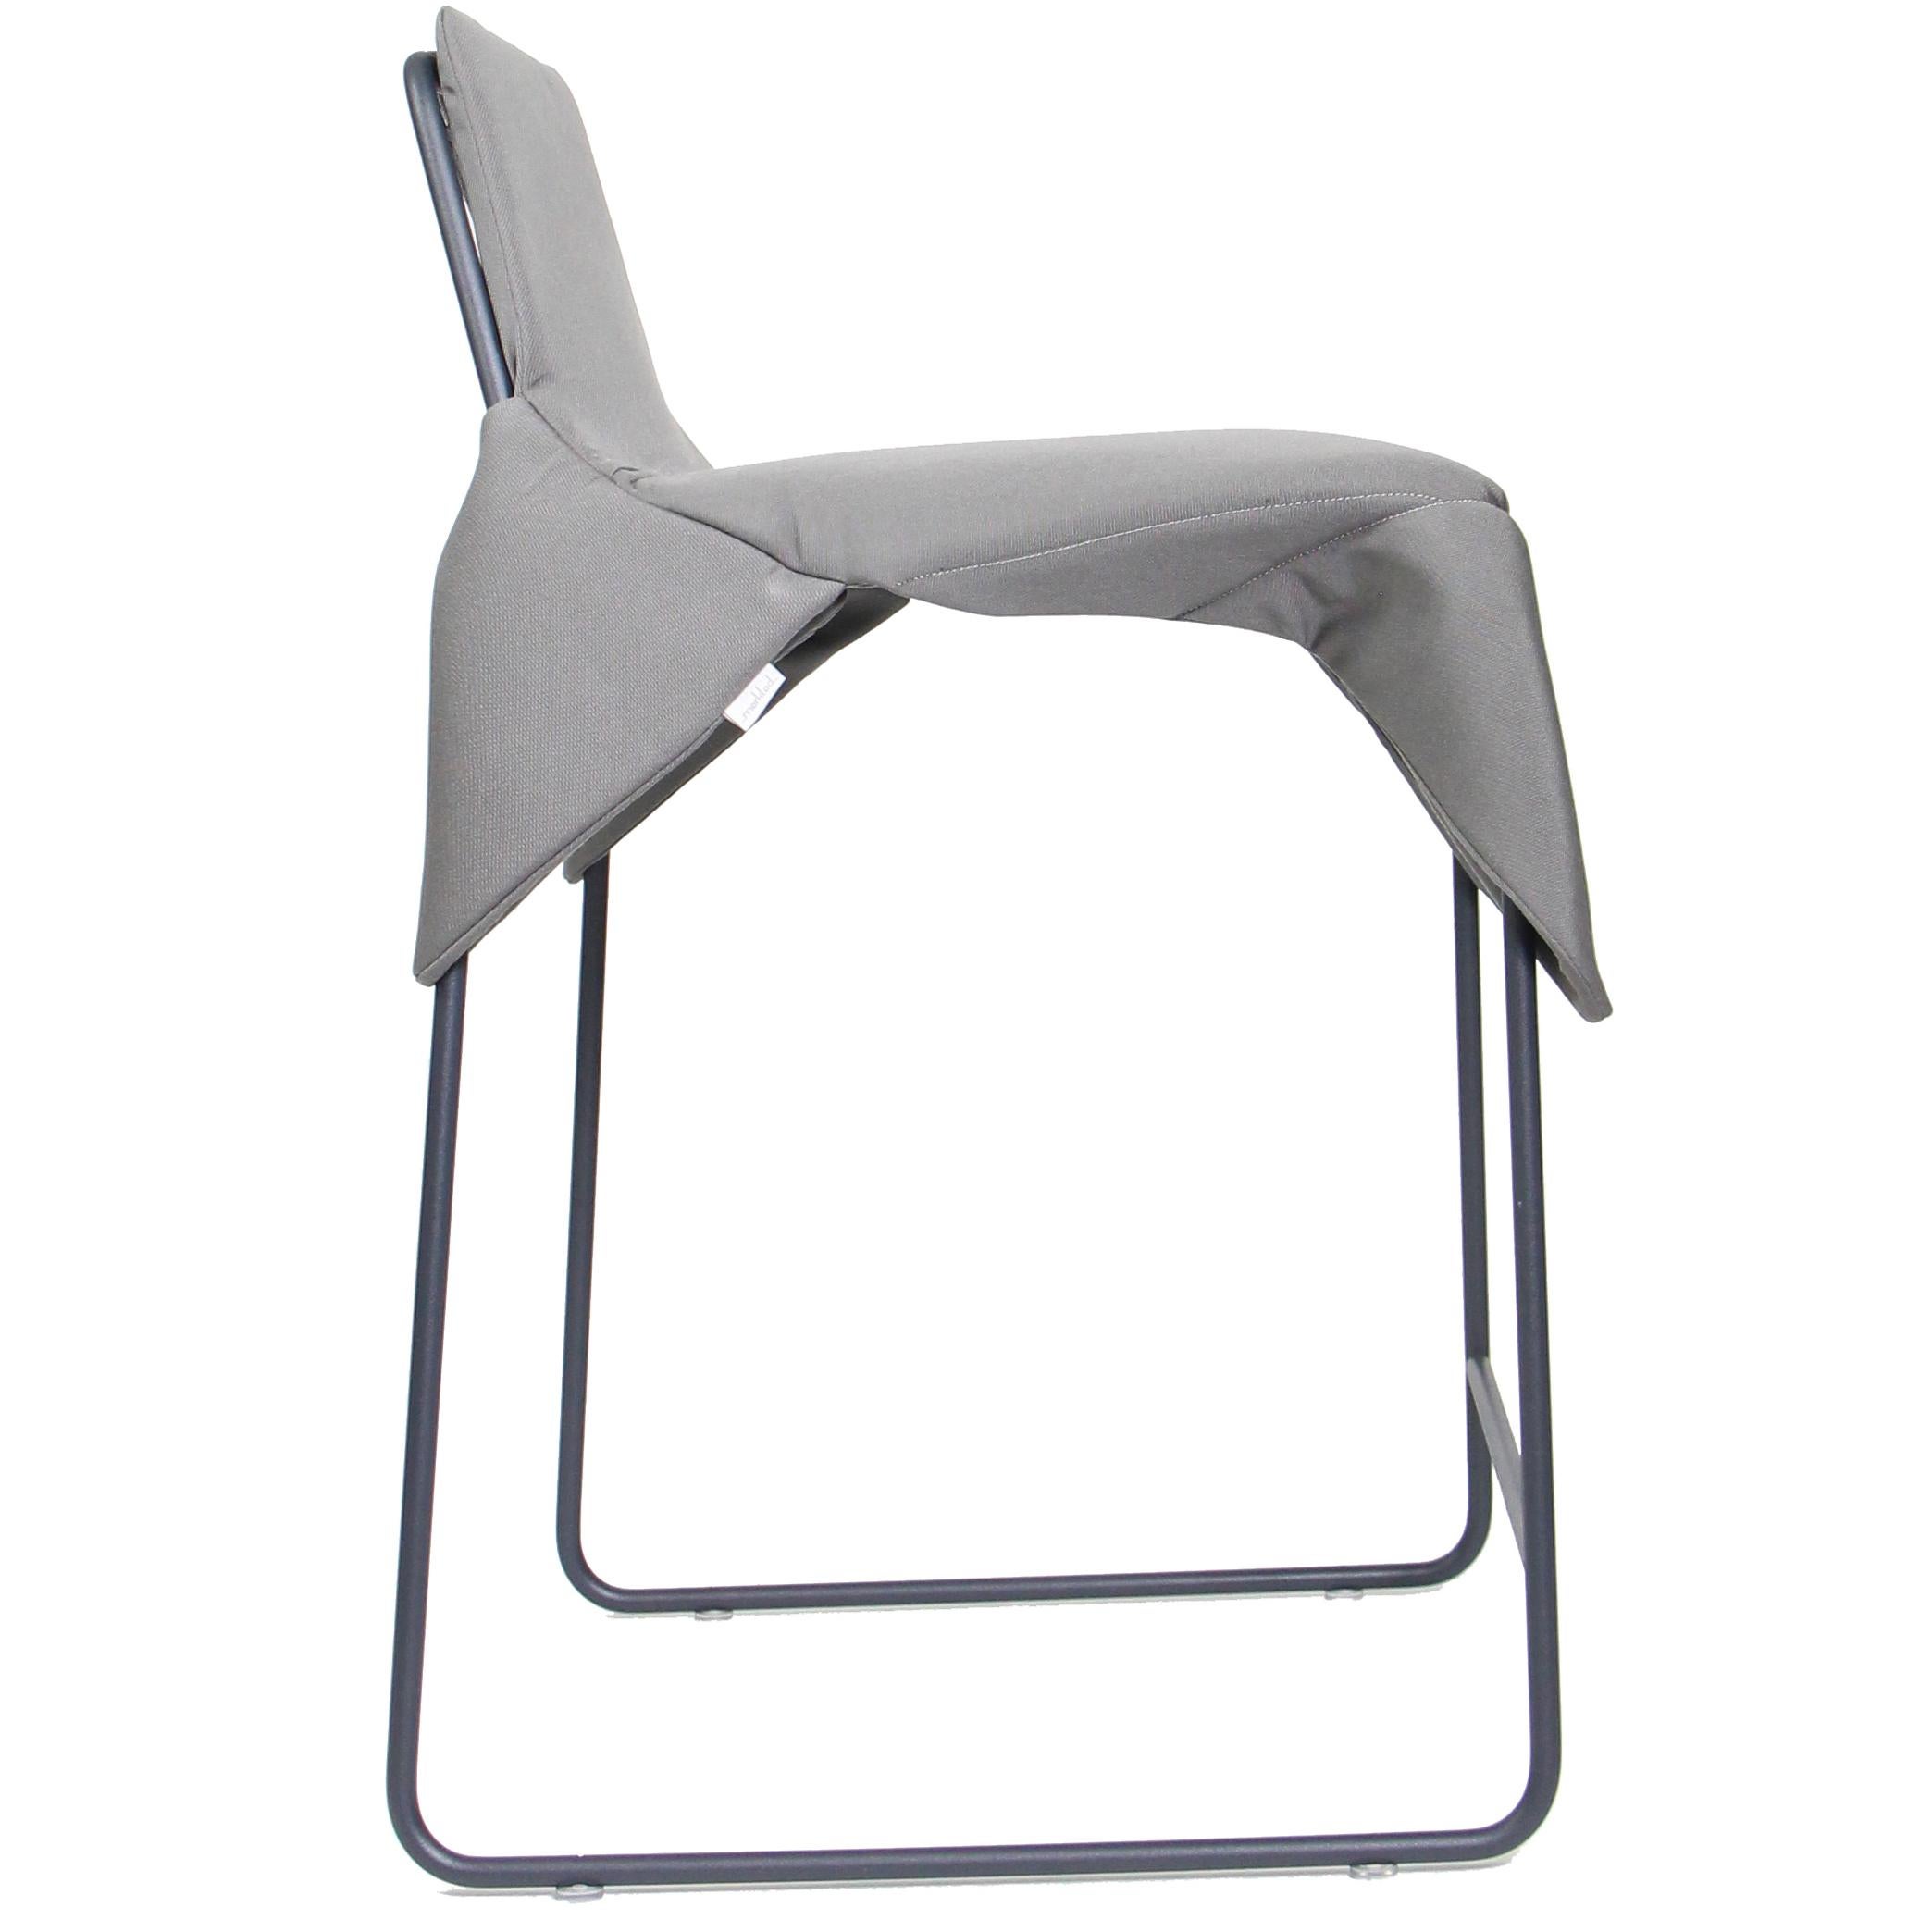 La Merkled Net Wrap Chair se caractérise par une structure minimale en acier soudé enveloppée d'une corde de nylon nouée et d'un coussin amovible rembourré en tissu Sunbrella durable pour l'extérieur, créant ainsi un siège flexible et